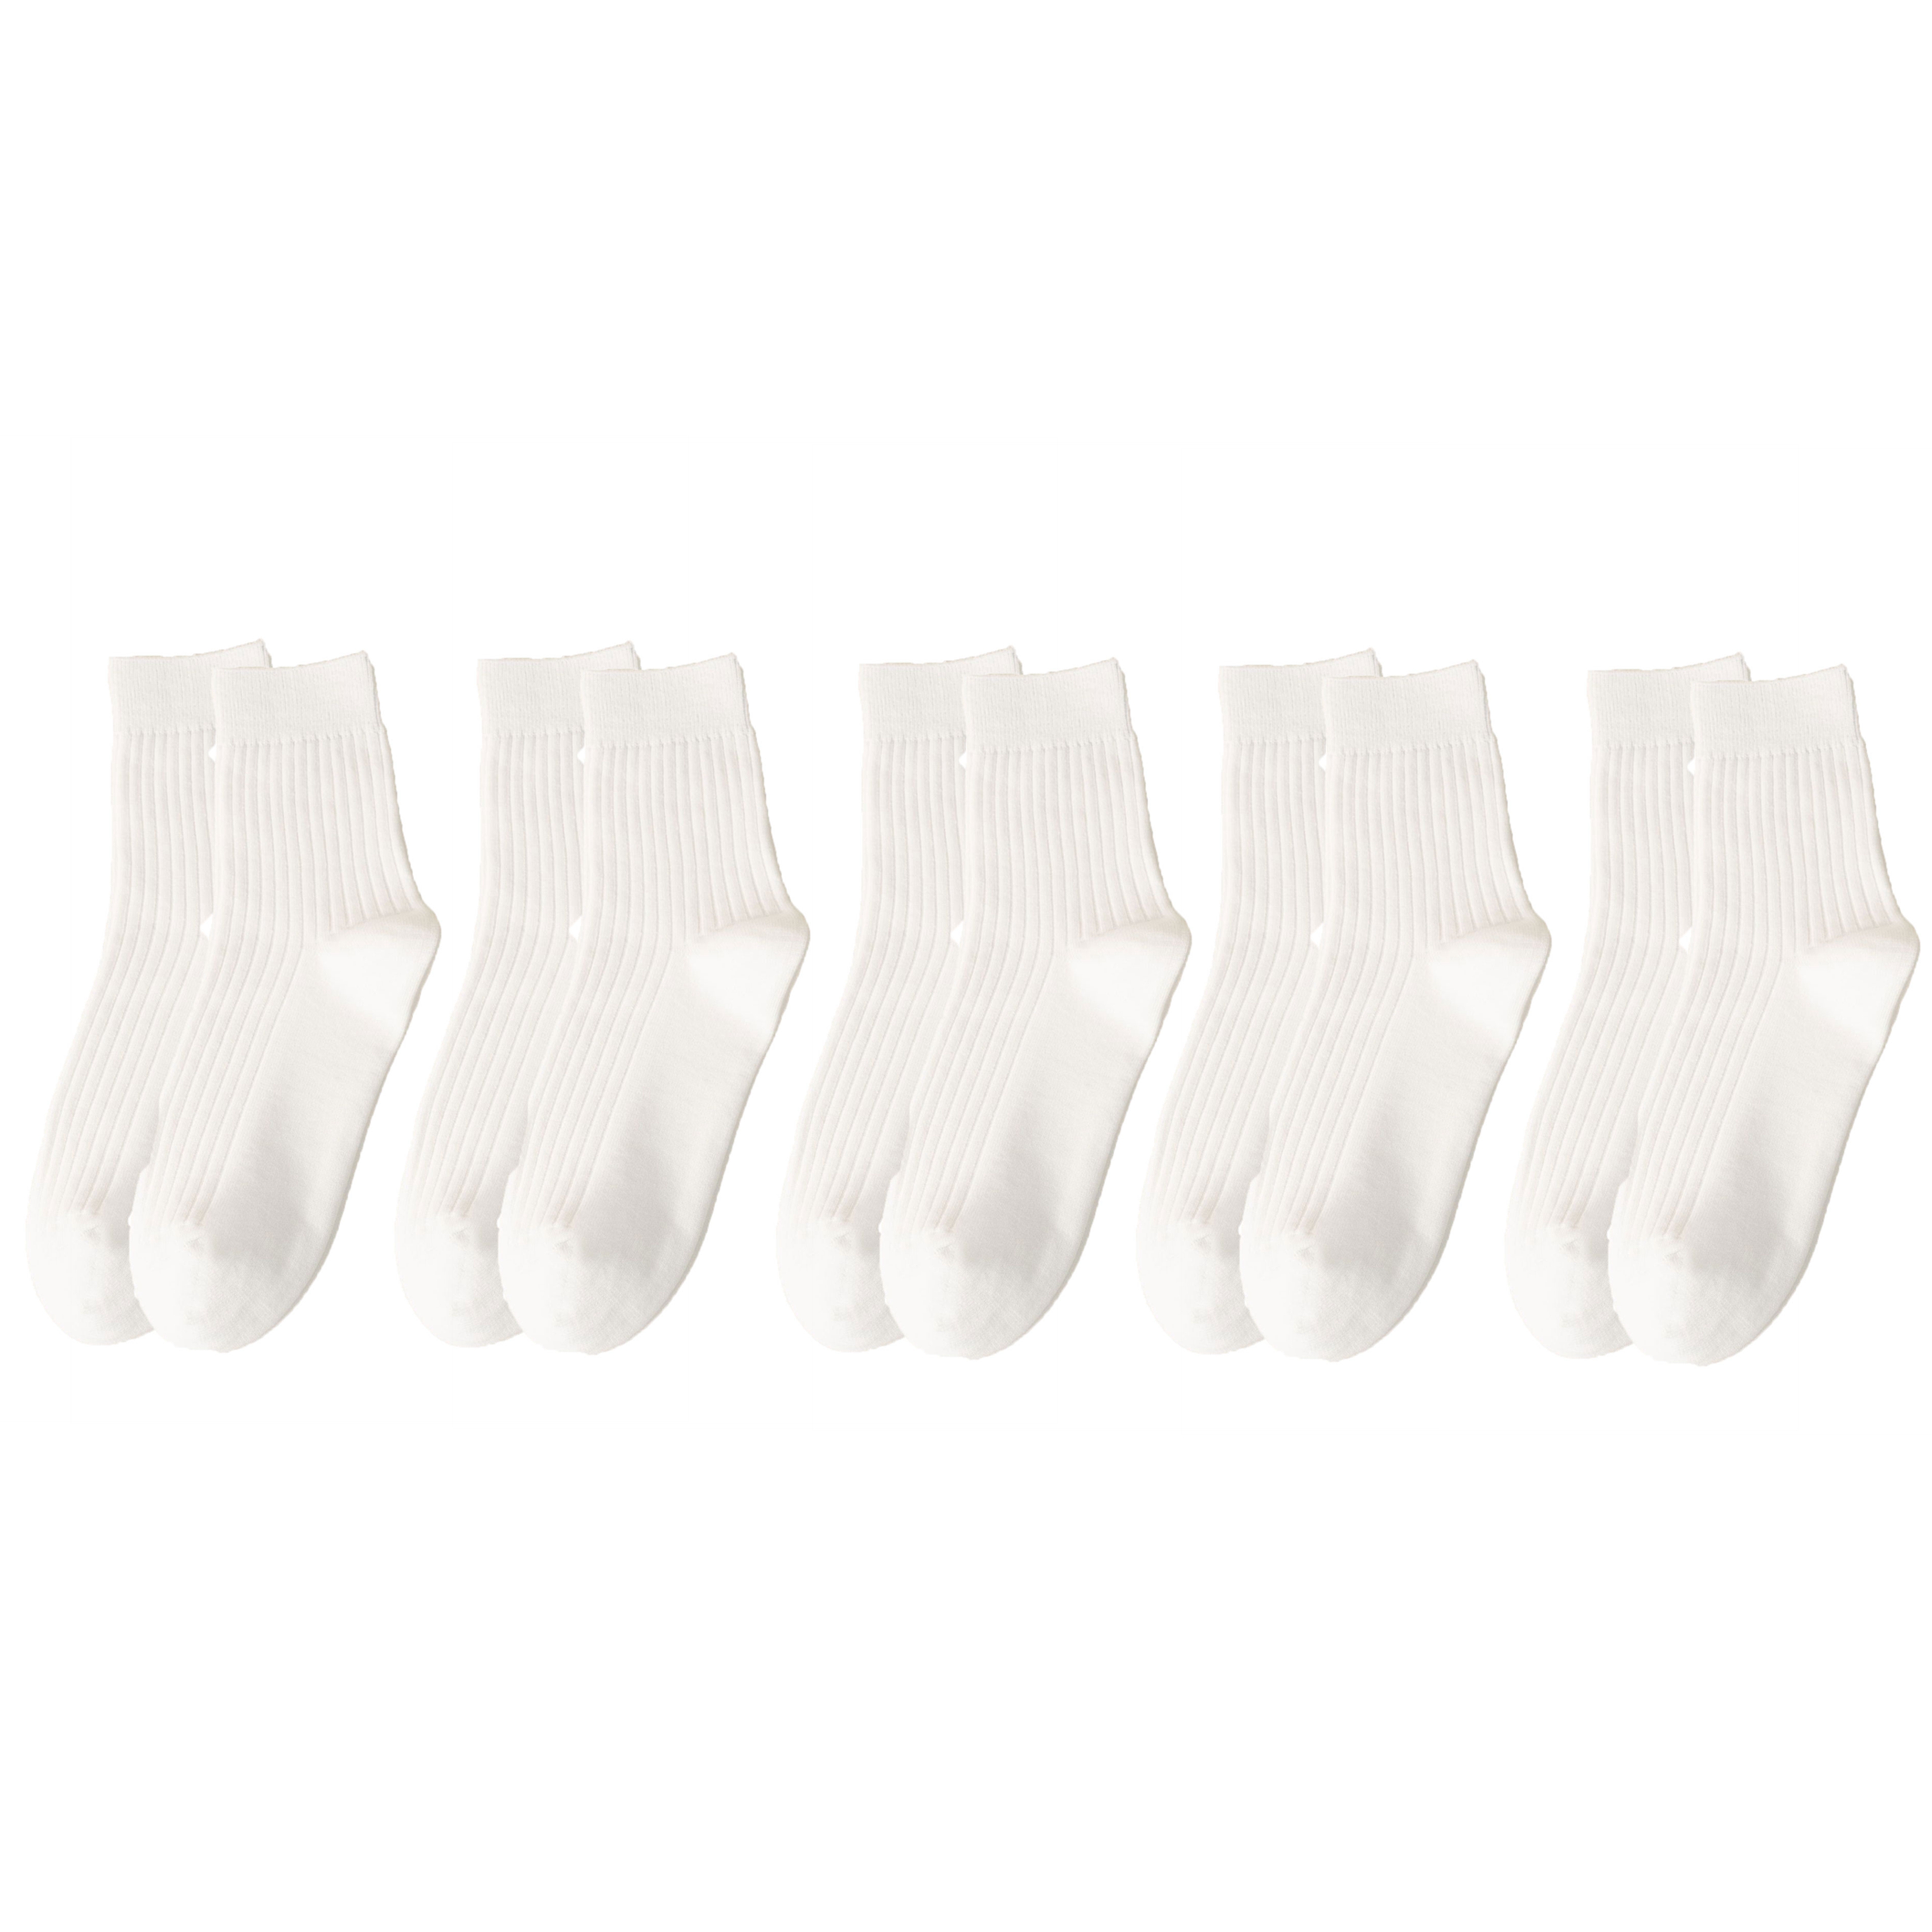 5 Pairs Cotton Socks for Men White Durable Socks Resistant to Pilling Socks Medium Length